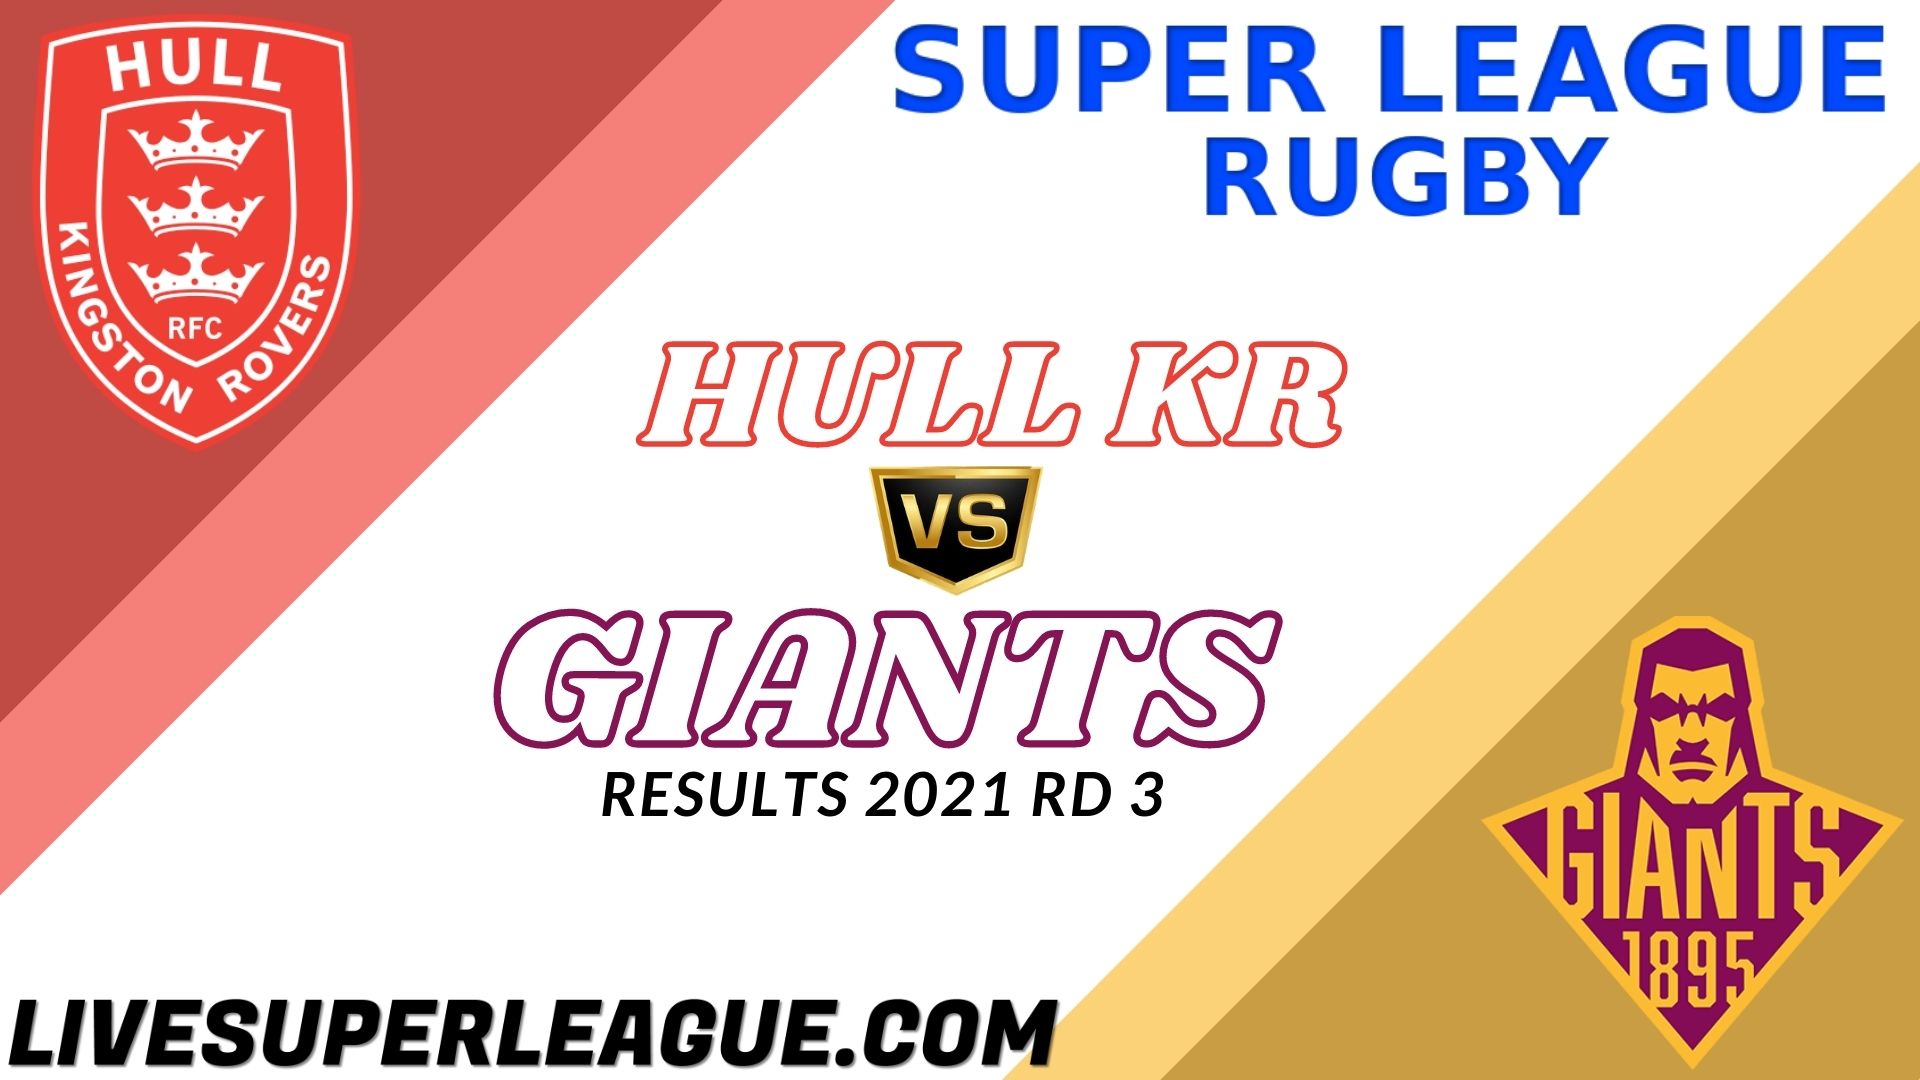 Hull KR Vs Giants Highlights 2021